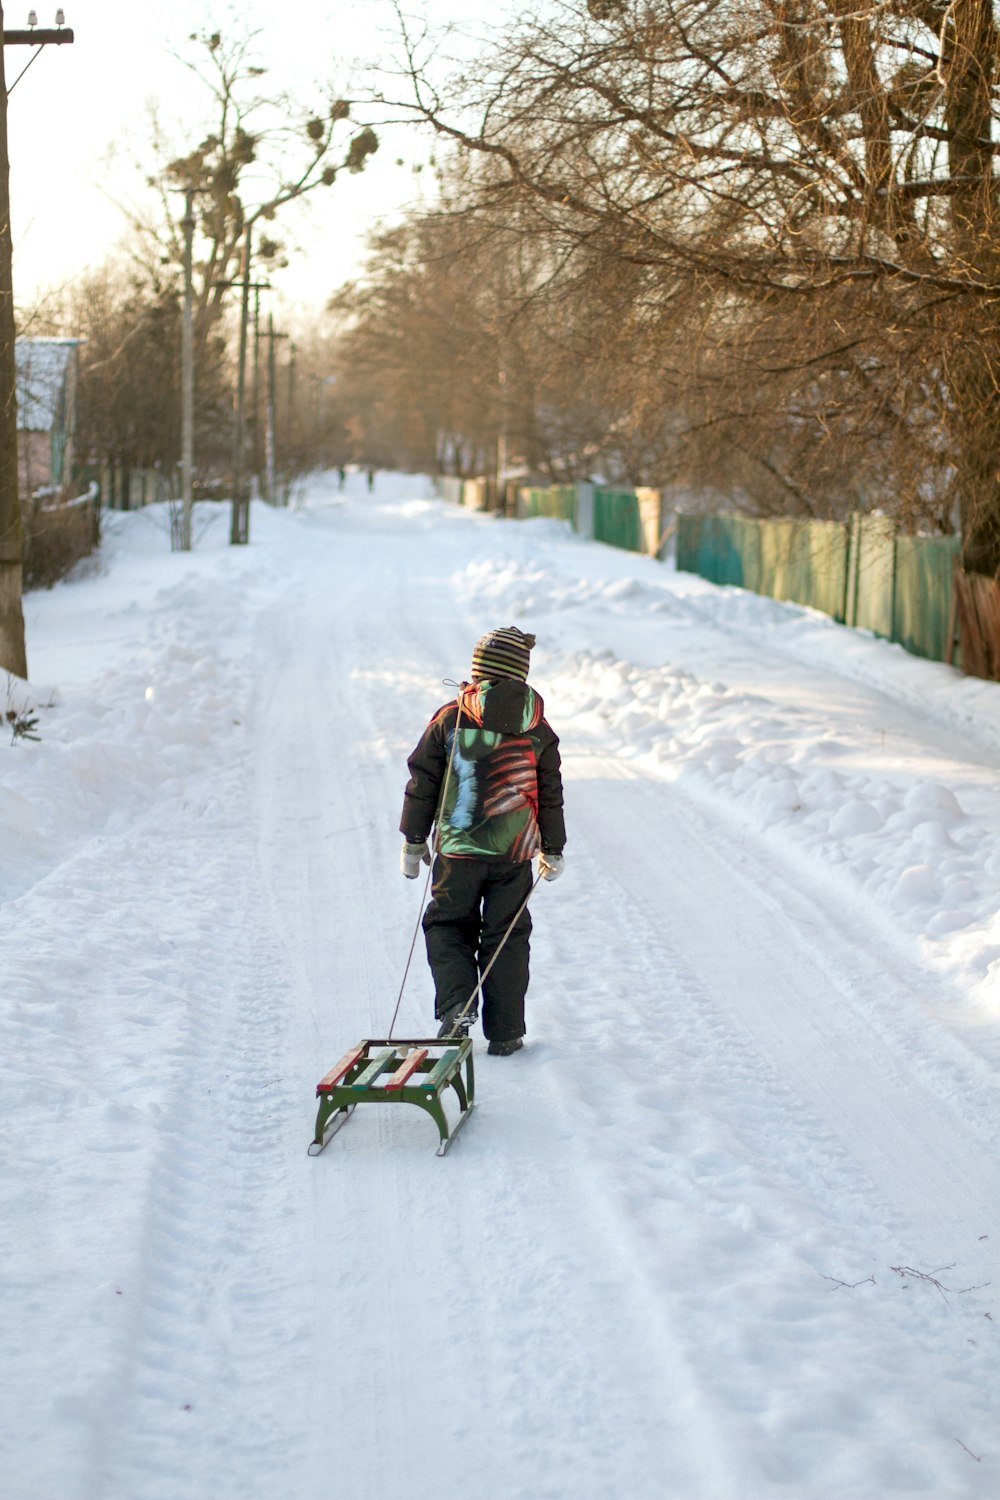 Eine Person, die einen Schlitten eine schneebedeckte Straße hinunterzieht